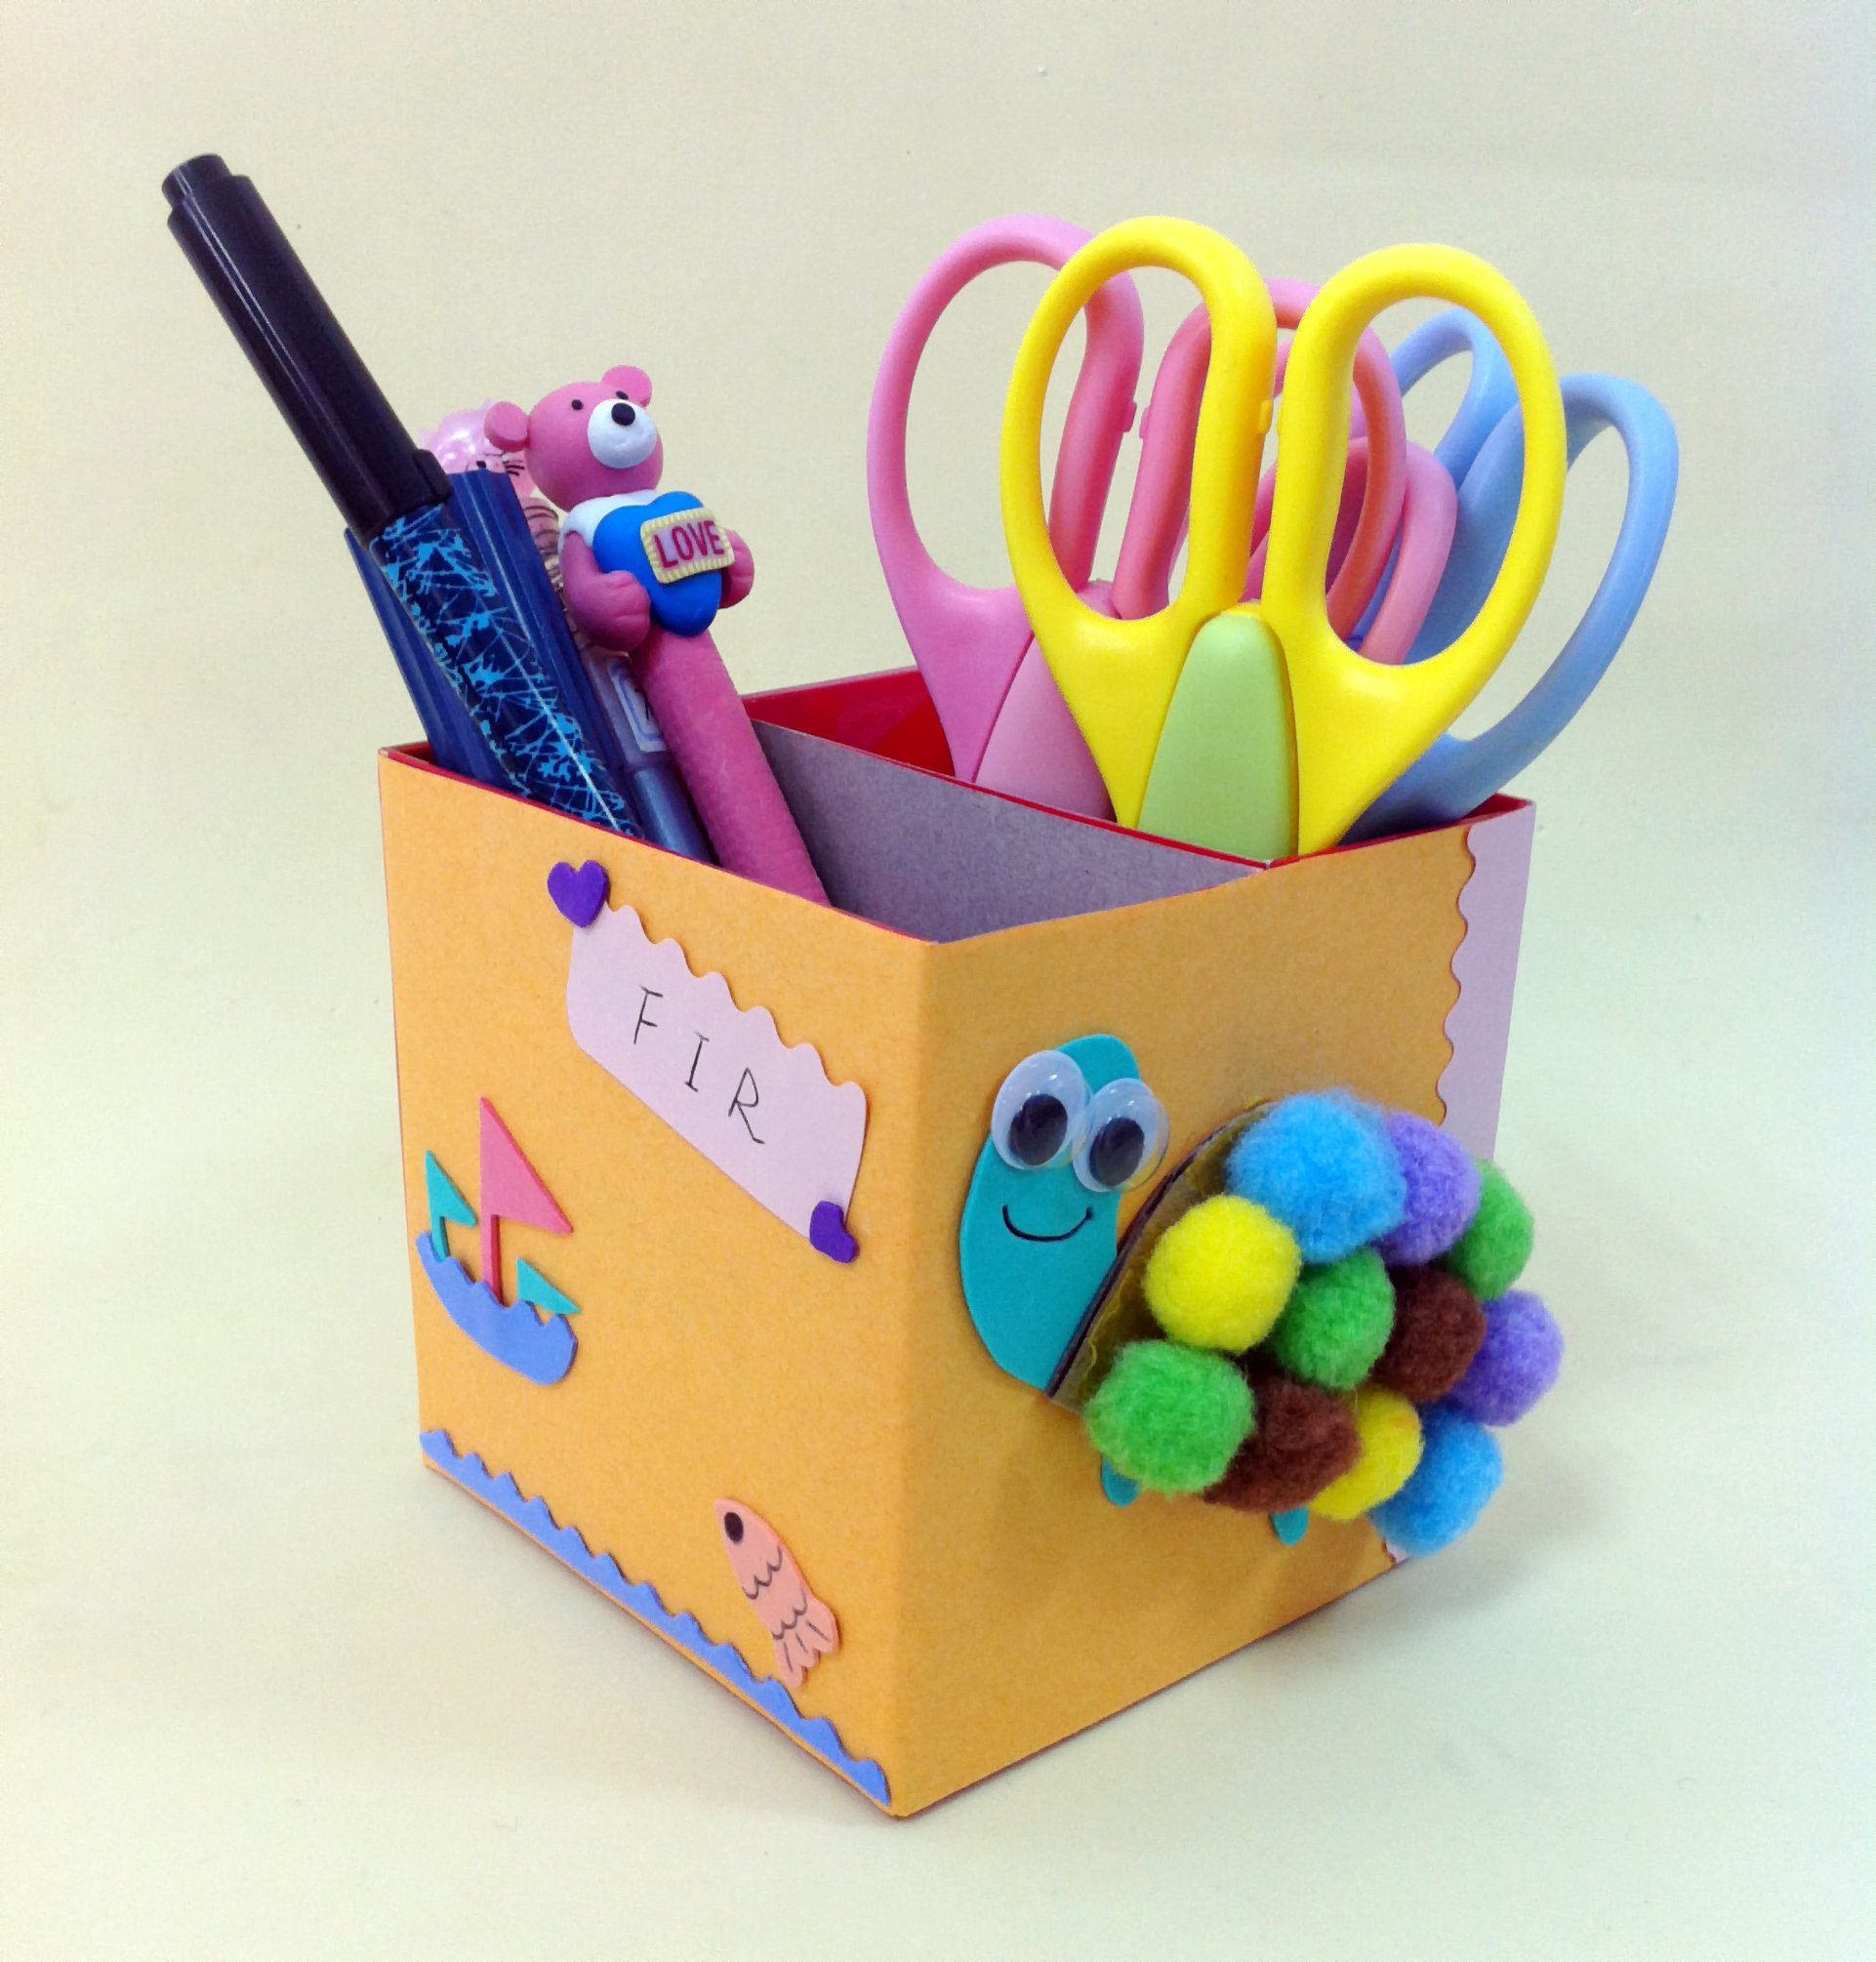 用纸盒和毛球DIY漂亮的小海龟笔筒做法图解教程